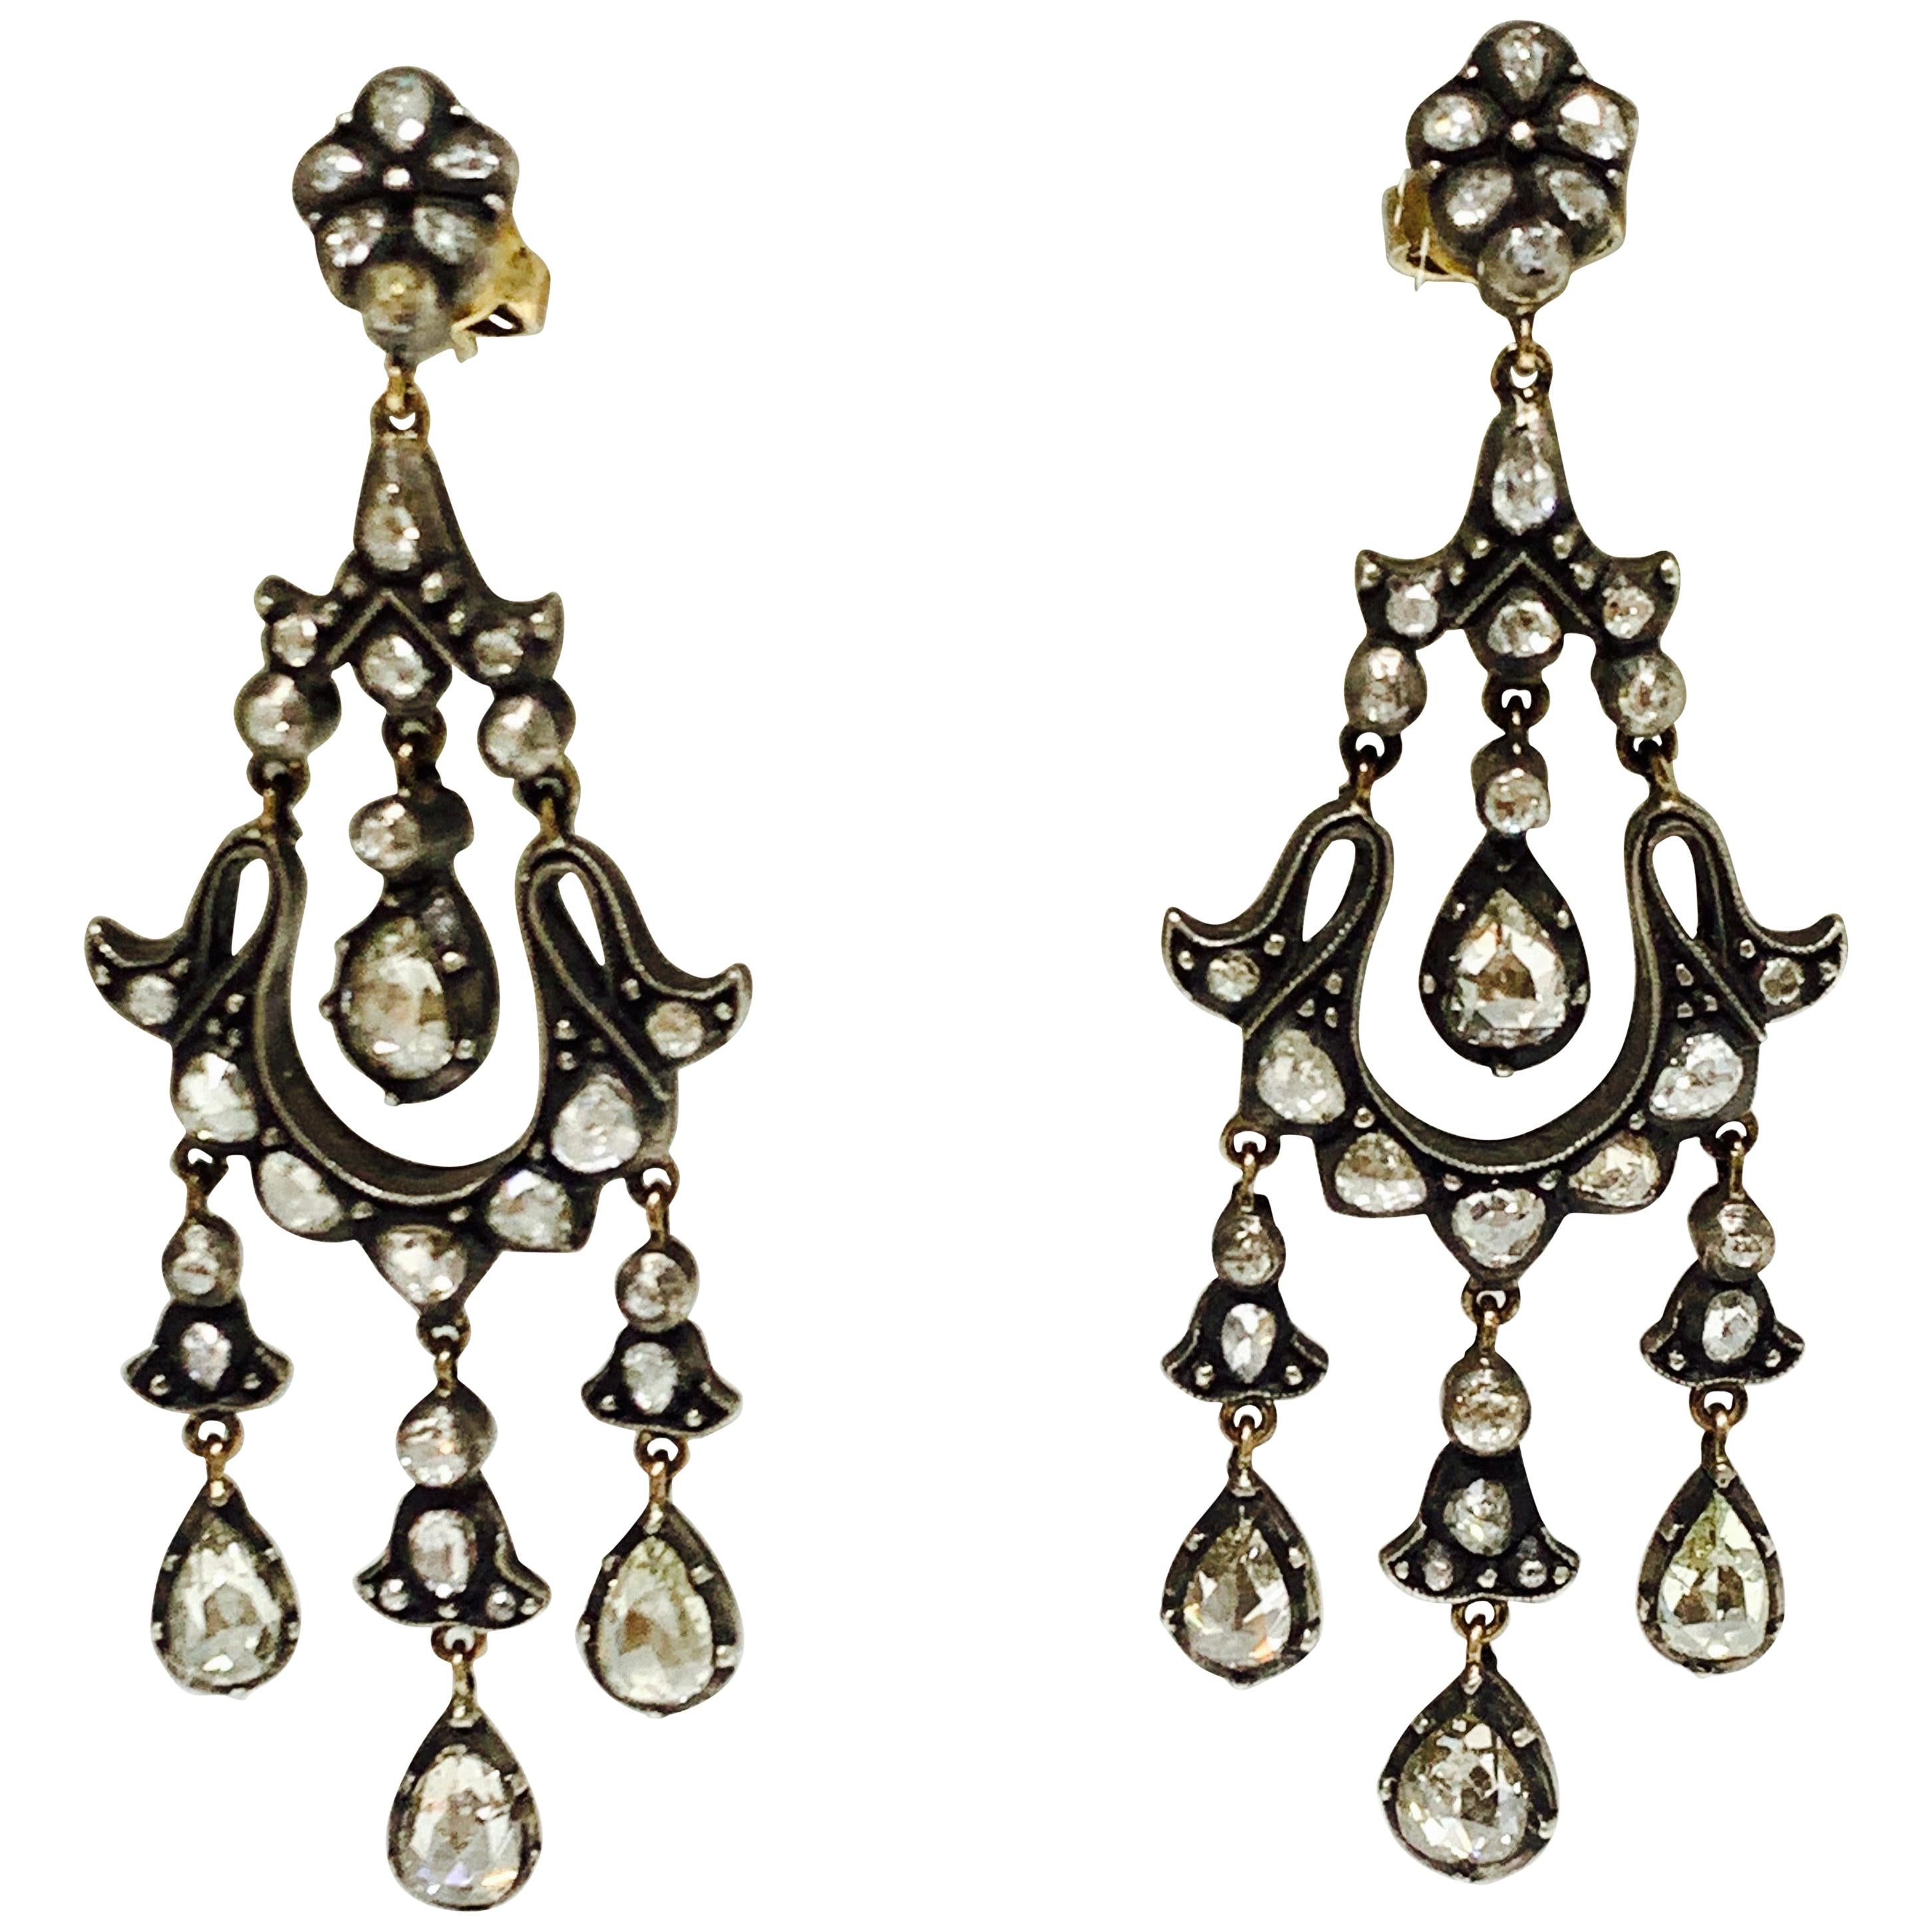 6 Carat Rose Cut Diamond Antique Style Chandelier Earrings in 18 Karat Gold